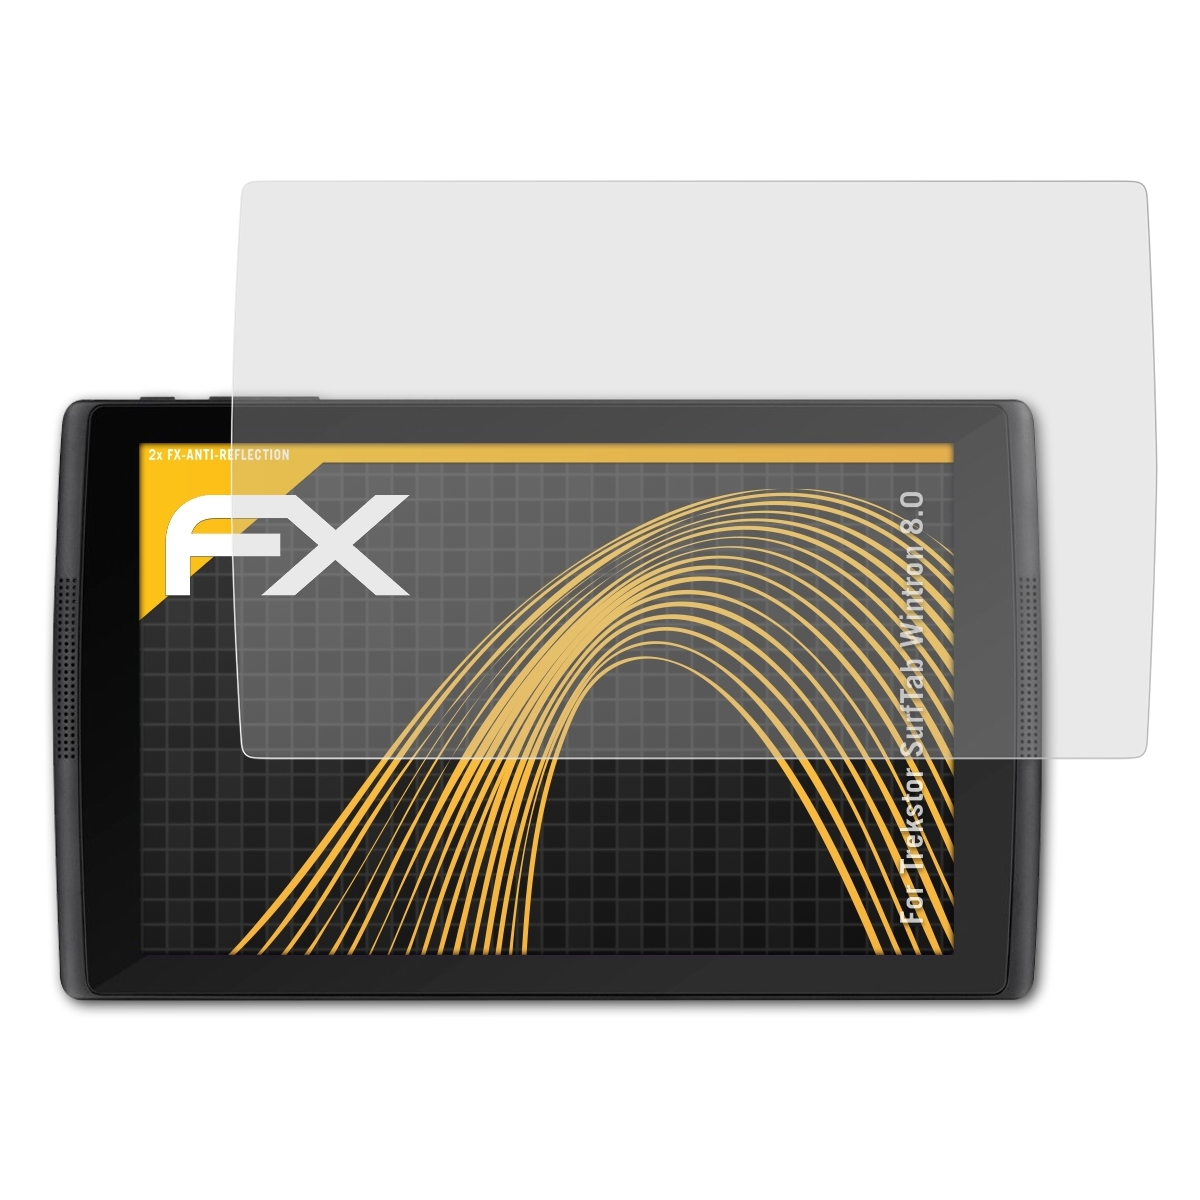 Displayschutz(für 8.0) 2x Trekstor FX-Antireflex SurfTab ATFOLIX Wintron